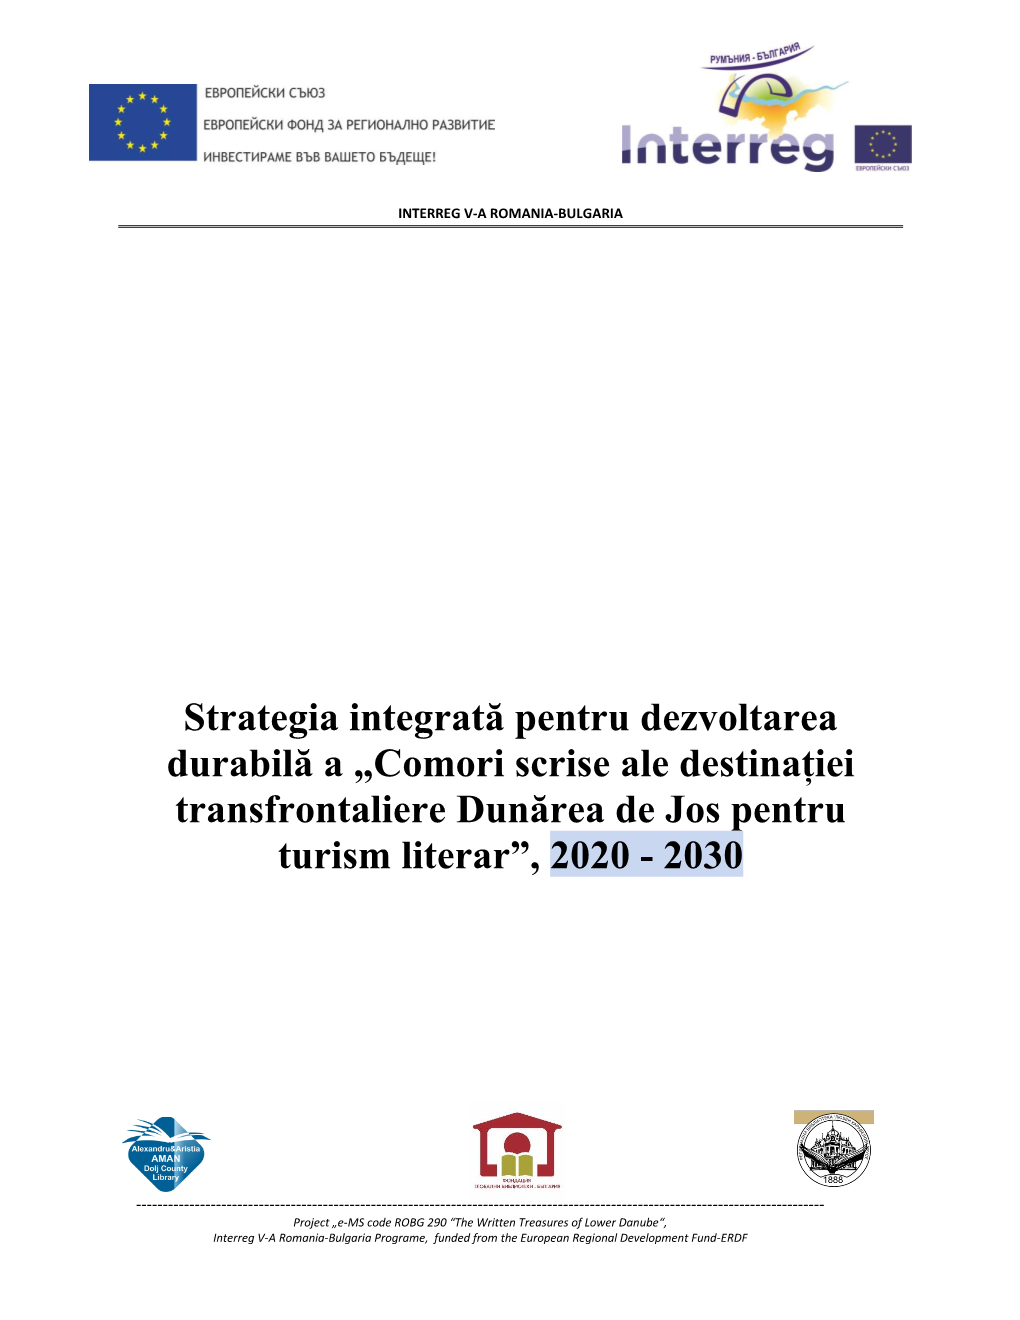 Strategia Integrată Pentru Dezvoltarea Durabilă a „Comori Scrise Ale Destinației Transfrontaliere Dunărea De Jos Pentru Turism Literar”, 2020 - 2030